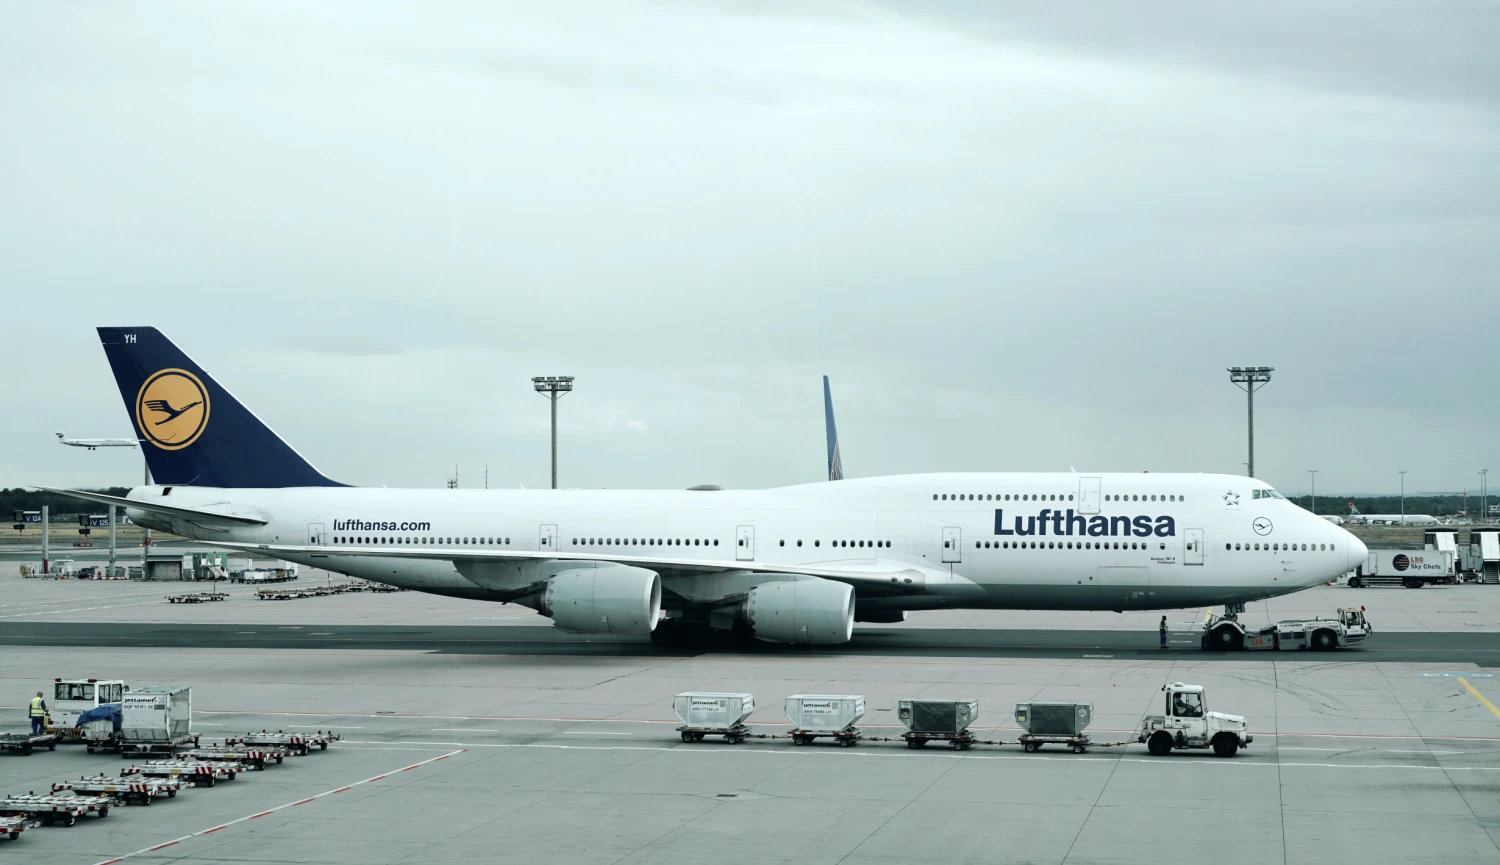 Roste poptávka po cestování. Lufthansa hlásí třetí nejlepší výsledek v historii